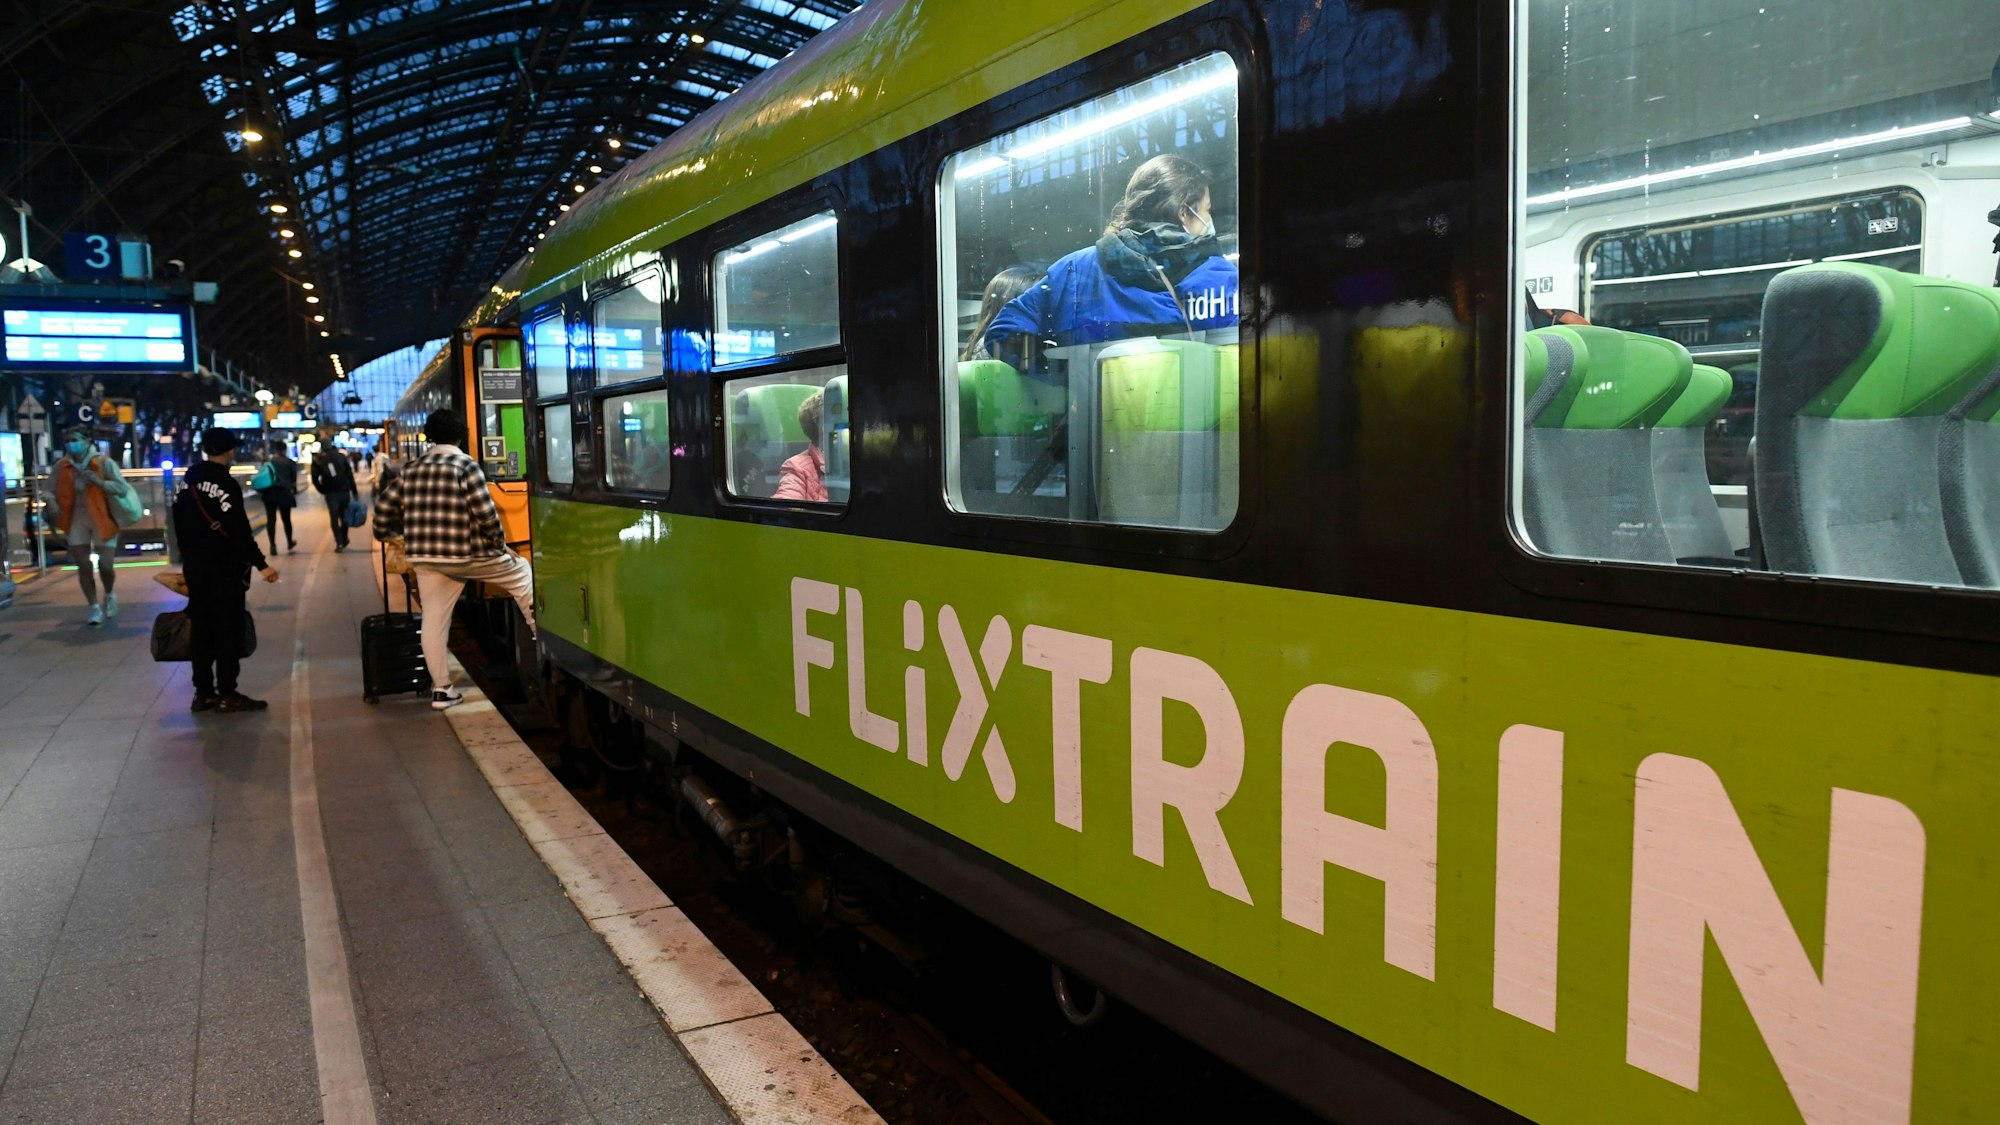 Mehrere Reisende steigen in einen Flixtrain am Kölner Hauptbahnhof, der Zug ist markant grün lackiert. Im Innenraum sind mehrere Fahrgäste zu sehen.